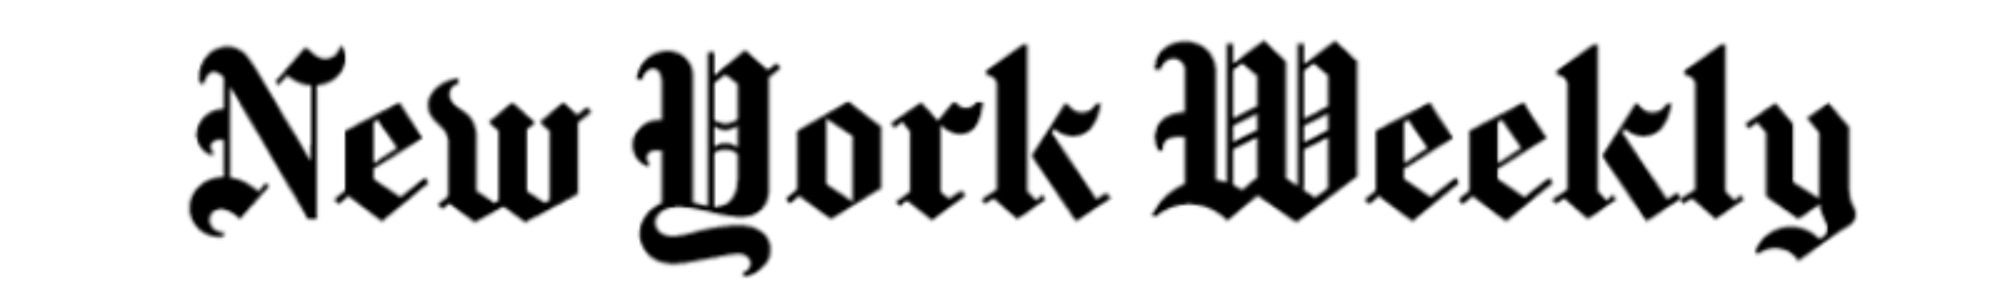 NY Weekly Logo